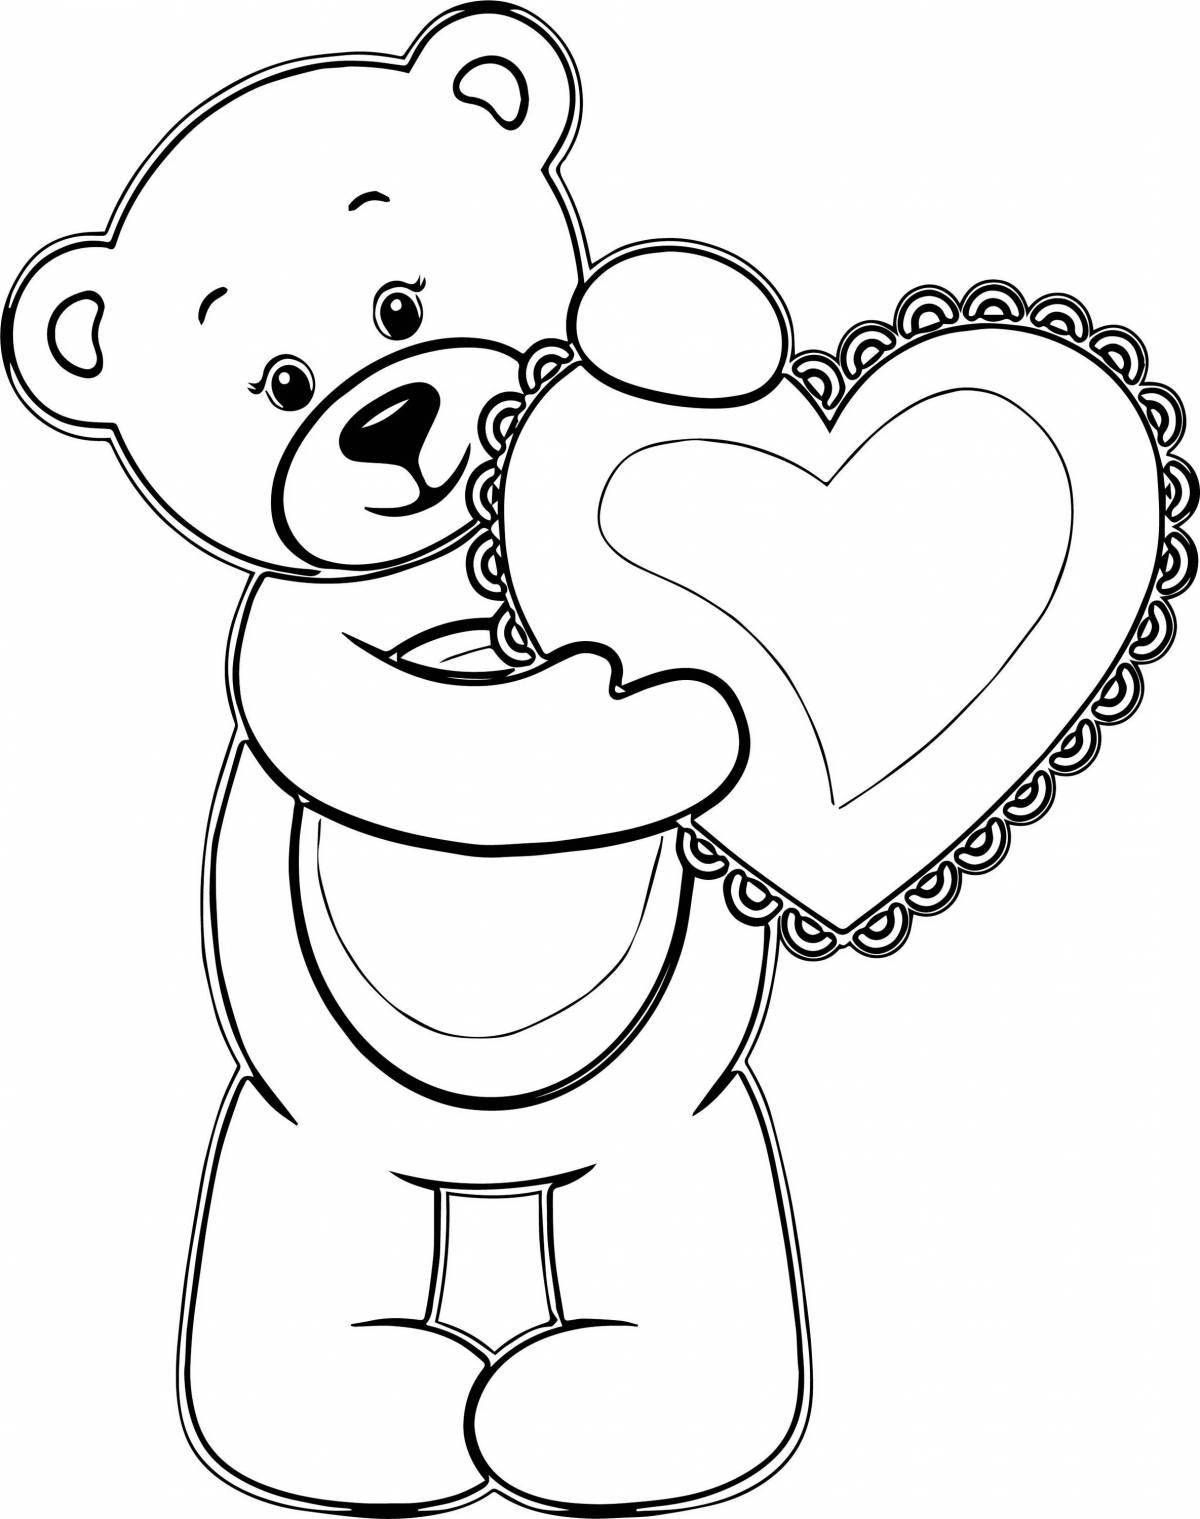 Раскраска весёлый медведь с сердечком